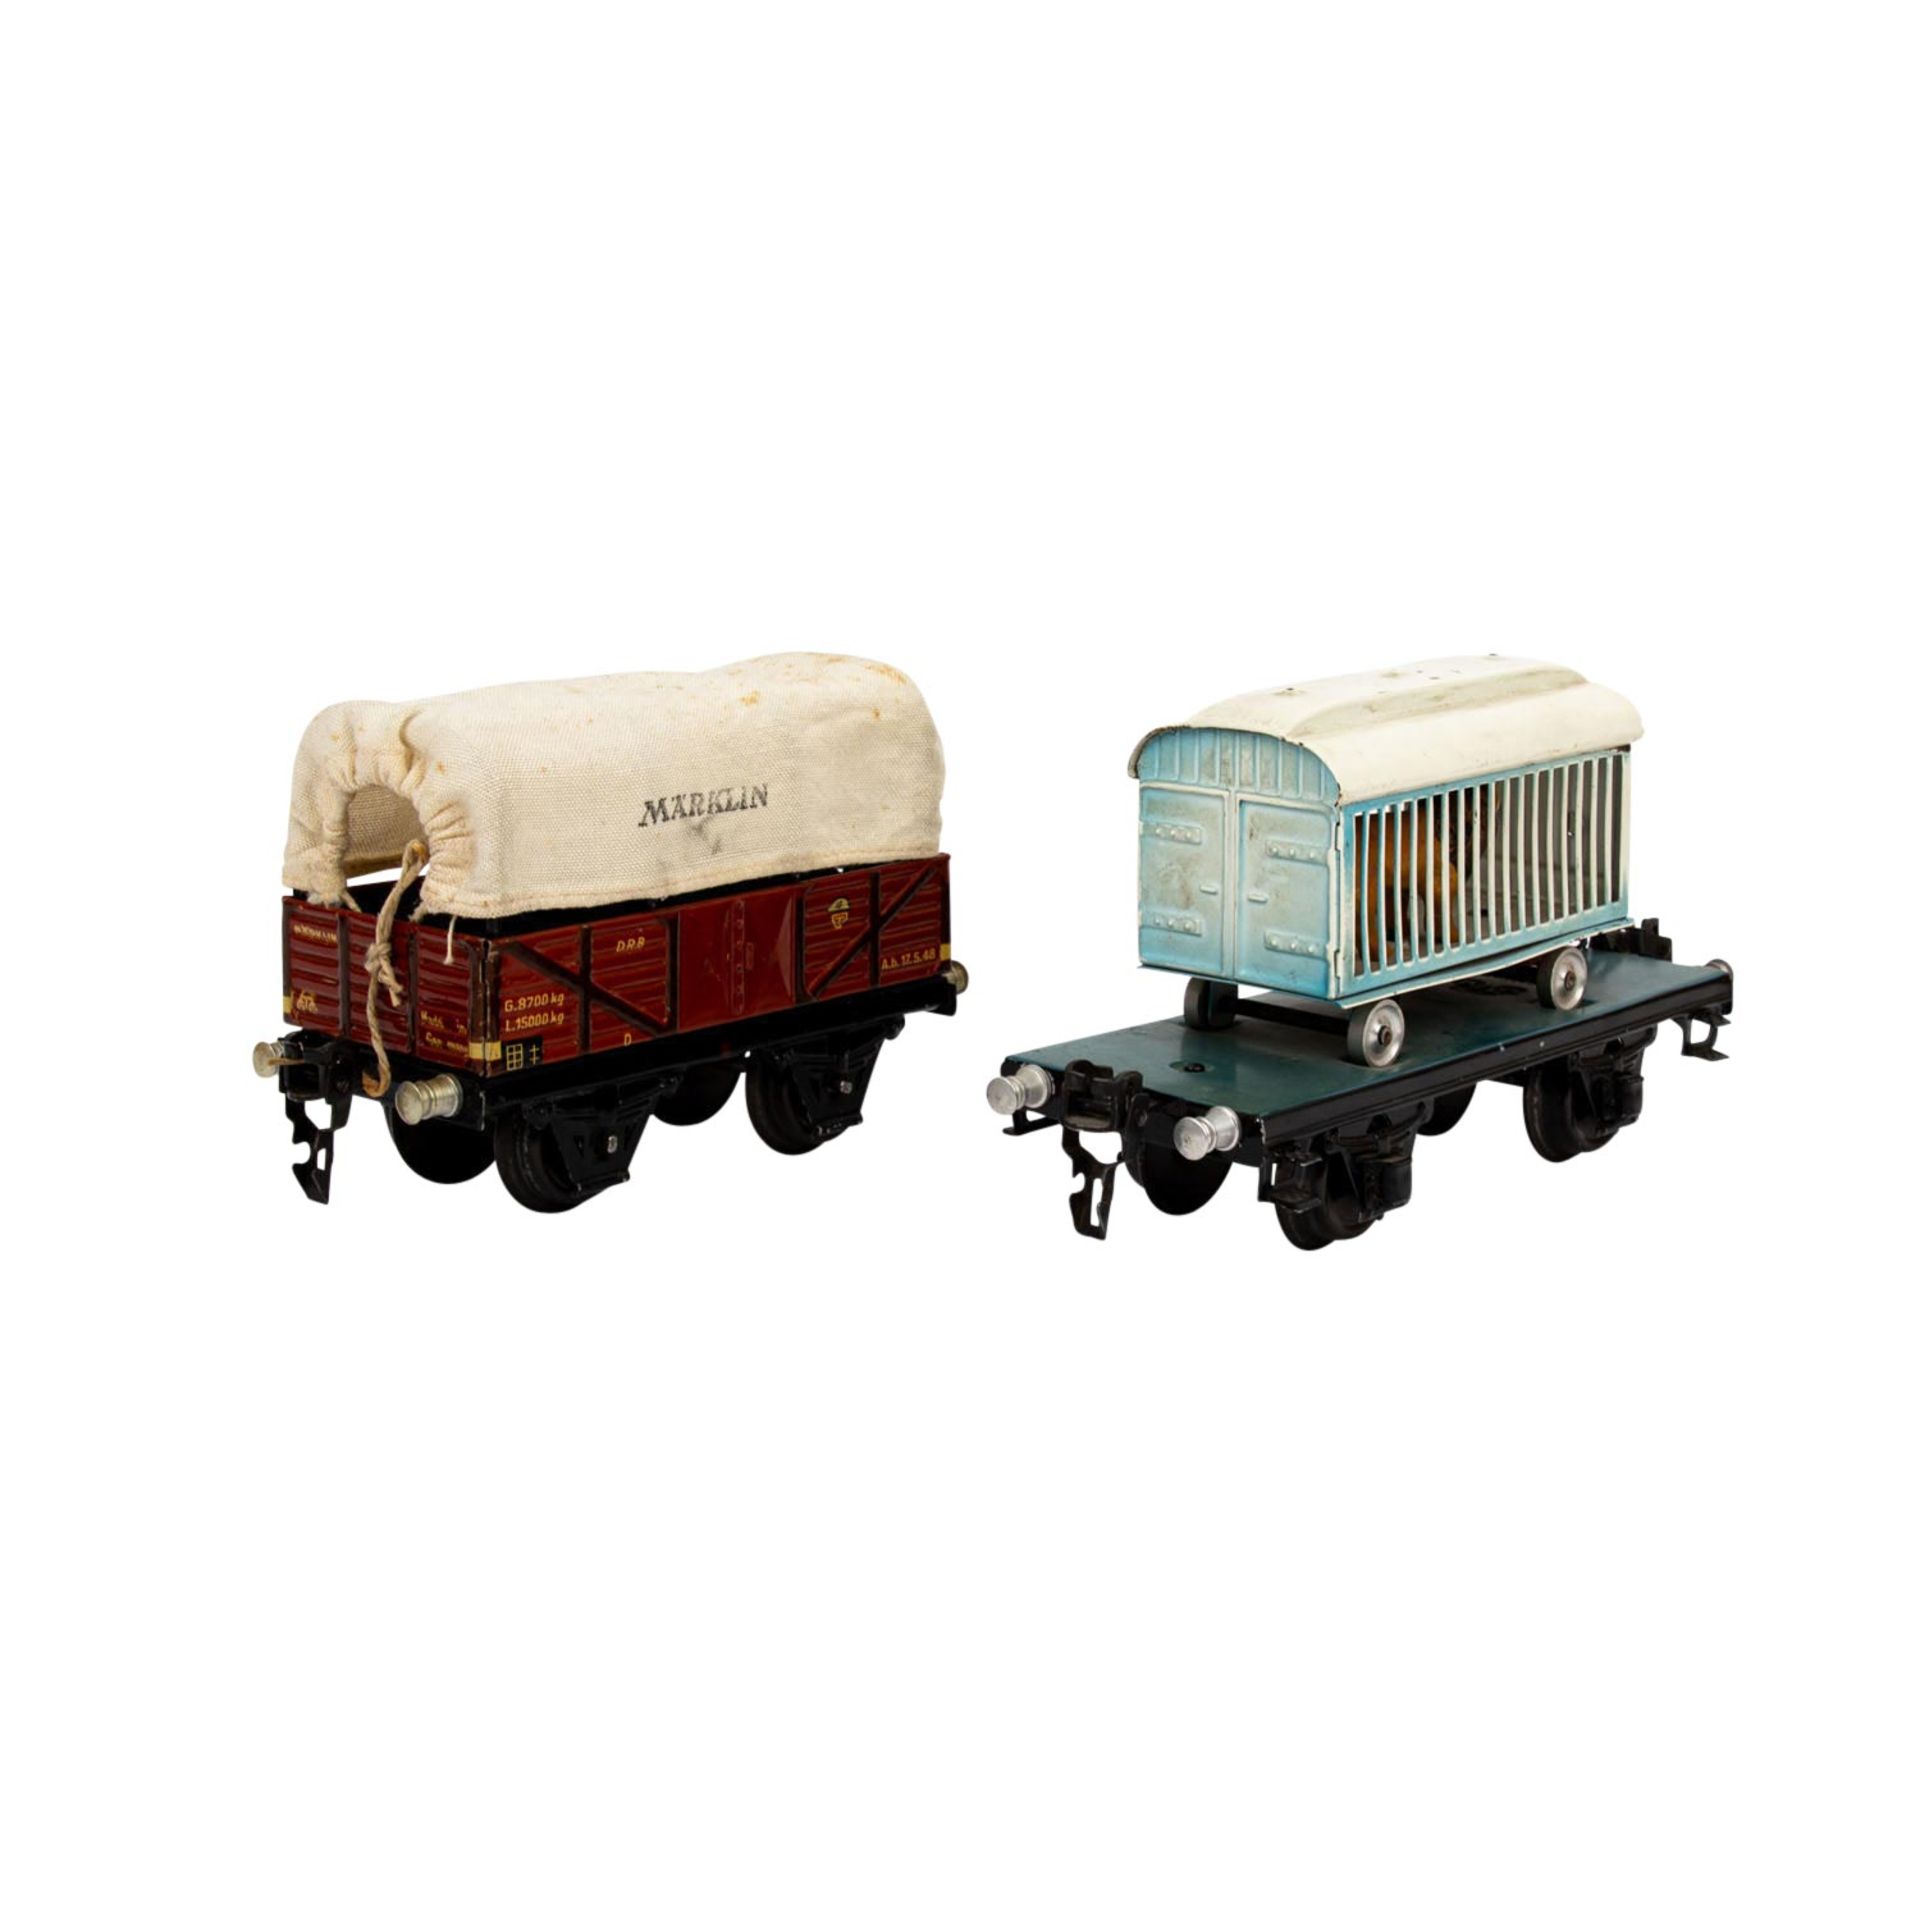 MÄRKLIN zwei Güterwagen, Spur 0, 1930er Jahre, bestehend aus Plattformwagen blau/sch - Bild 4 aus 7